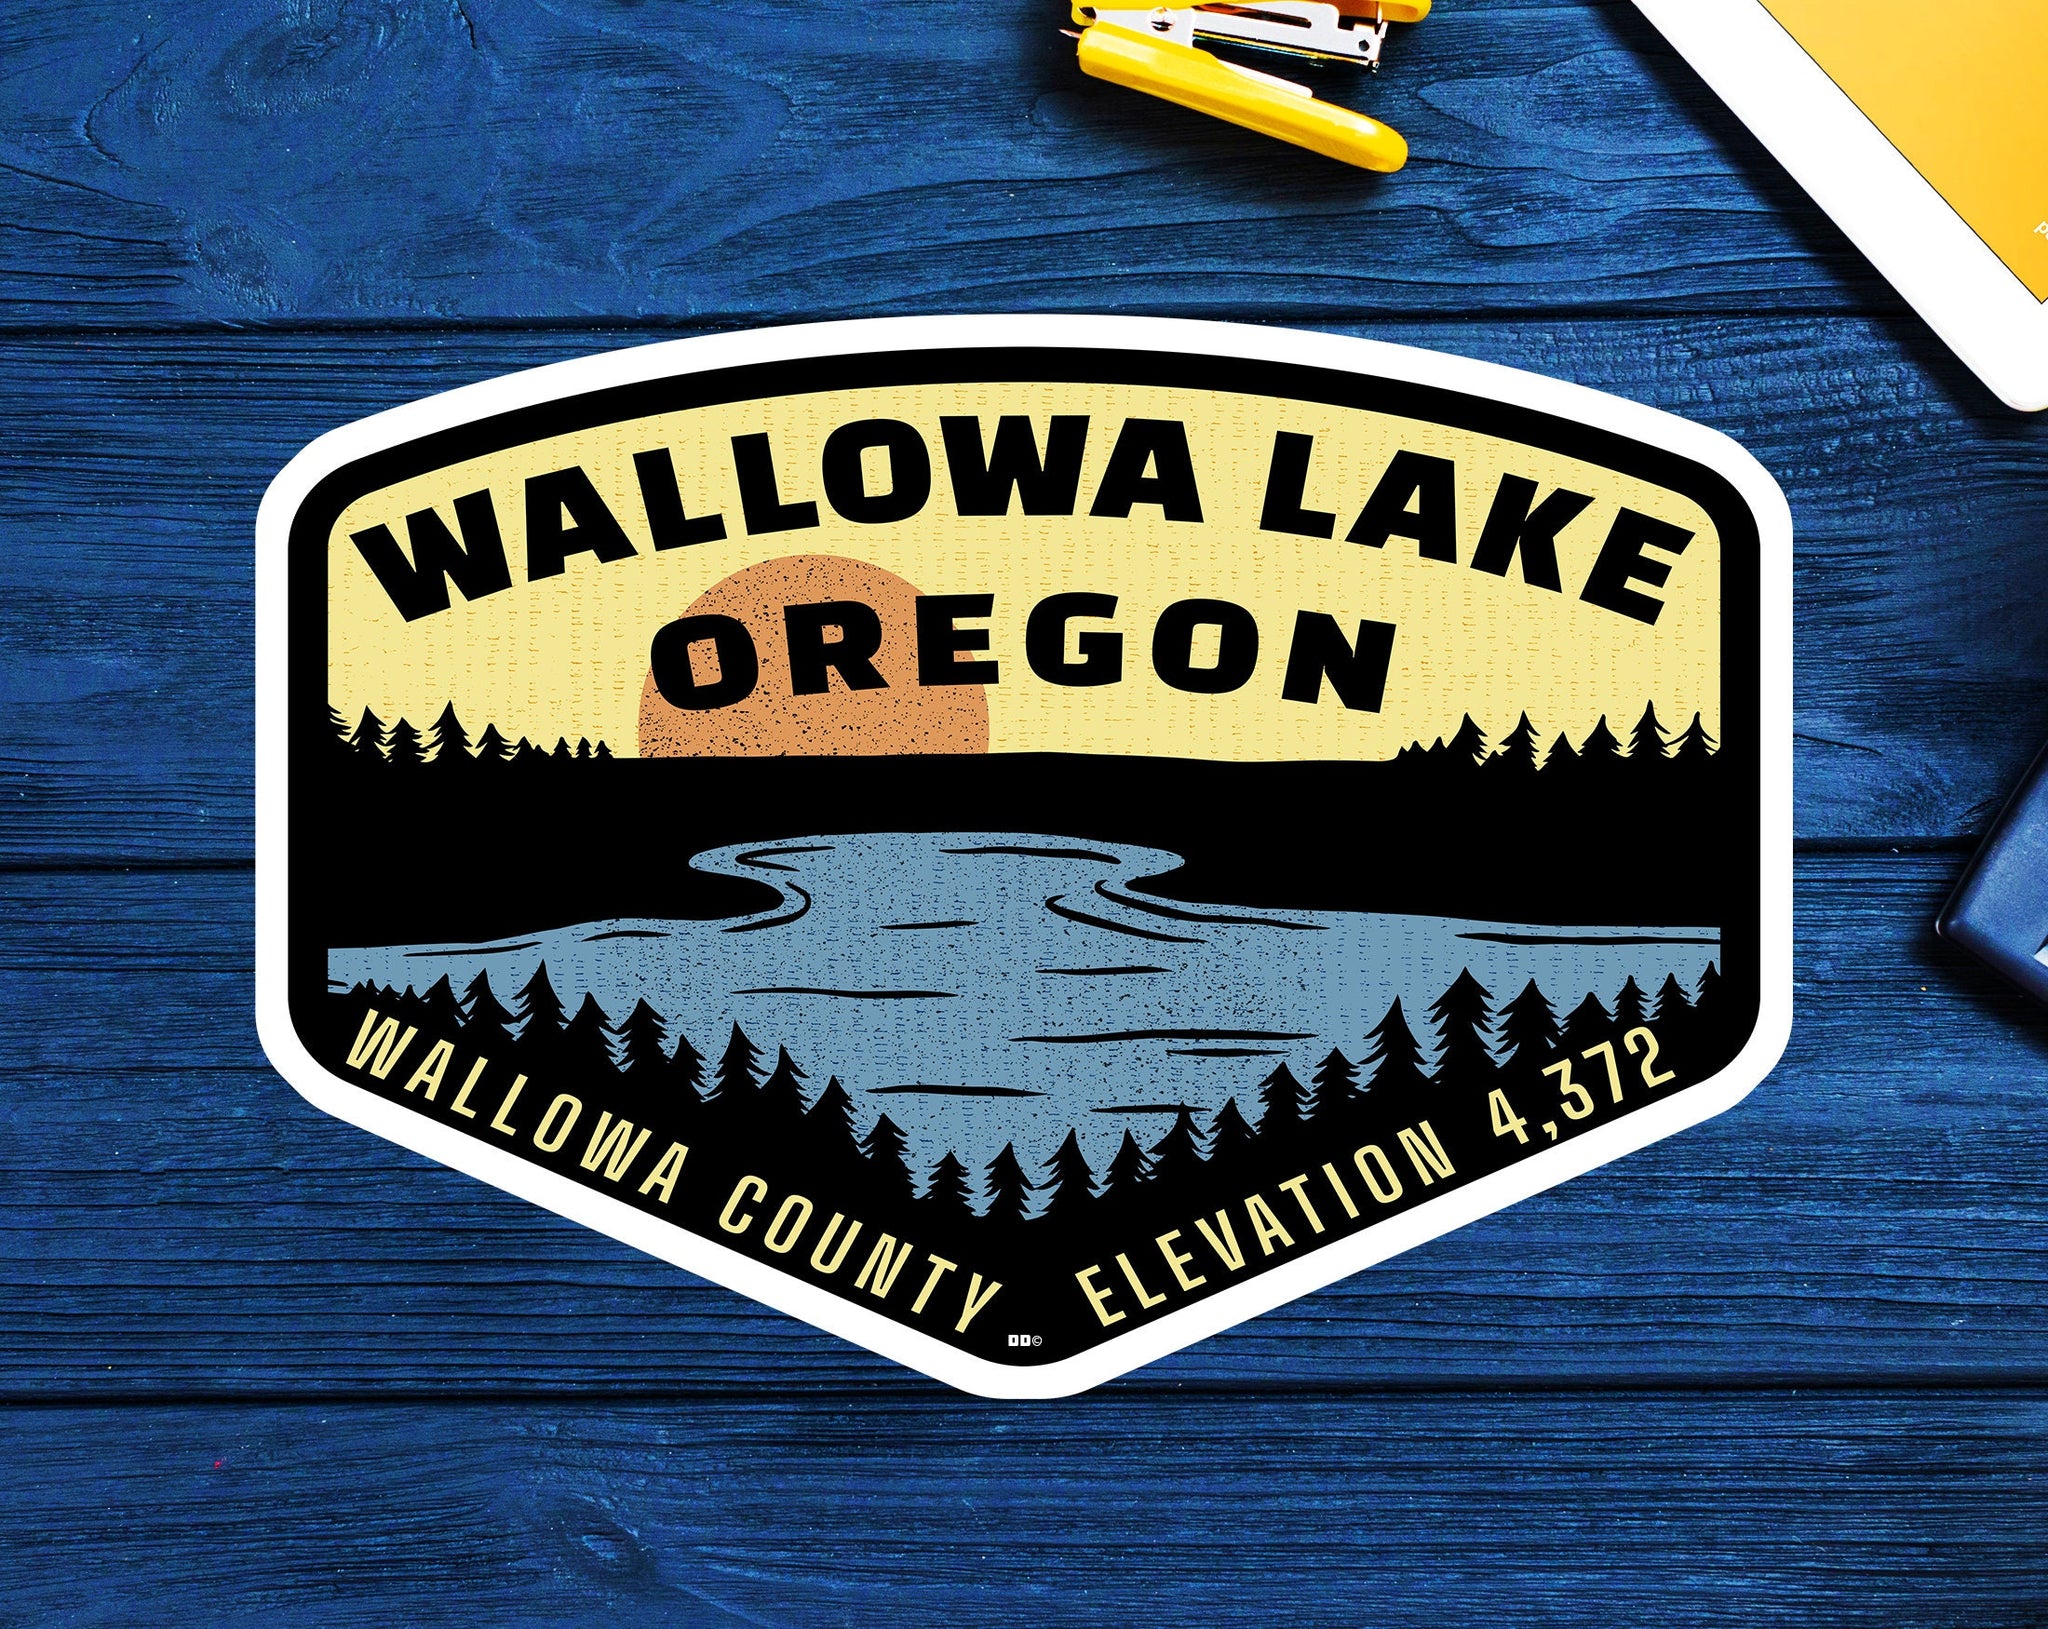 Wallowa Lake Oregon Sticker Decal 3.75" Vinyl Indoor Outdoor Laptop Car Truck Van